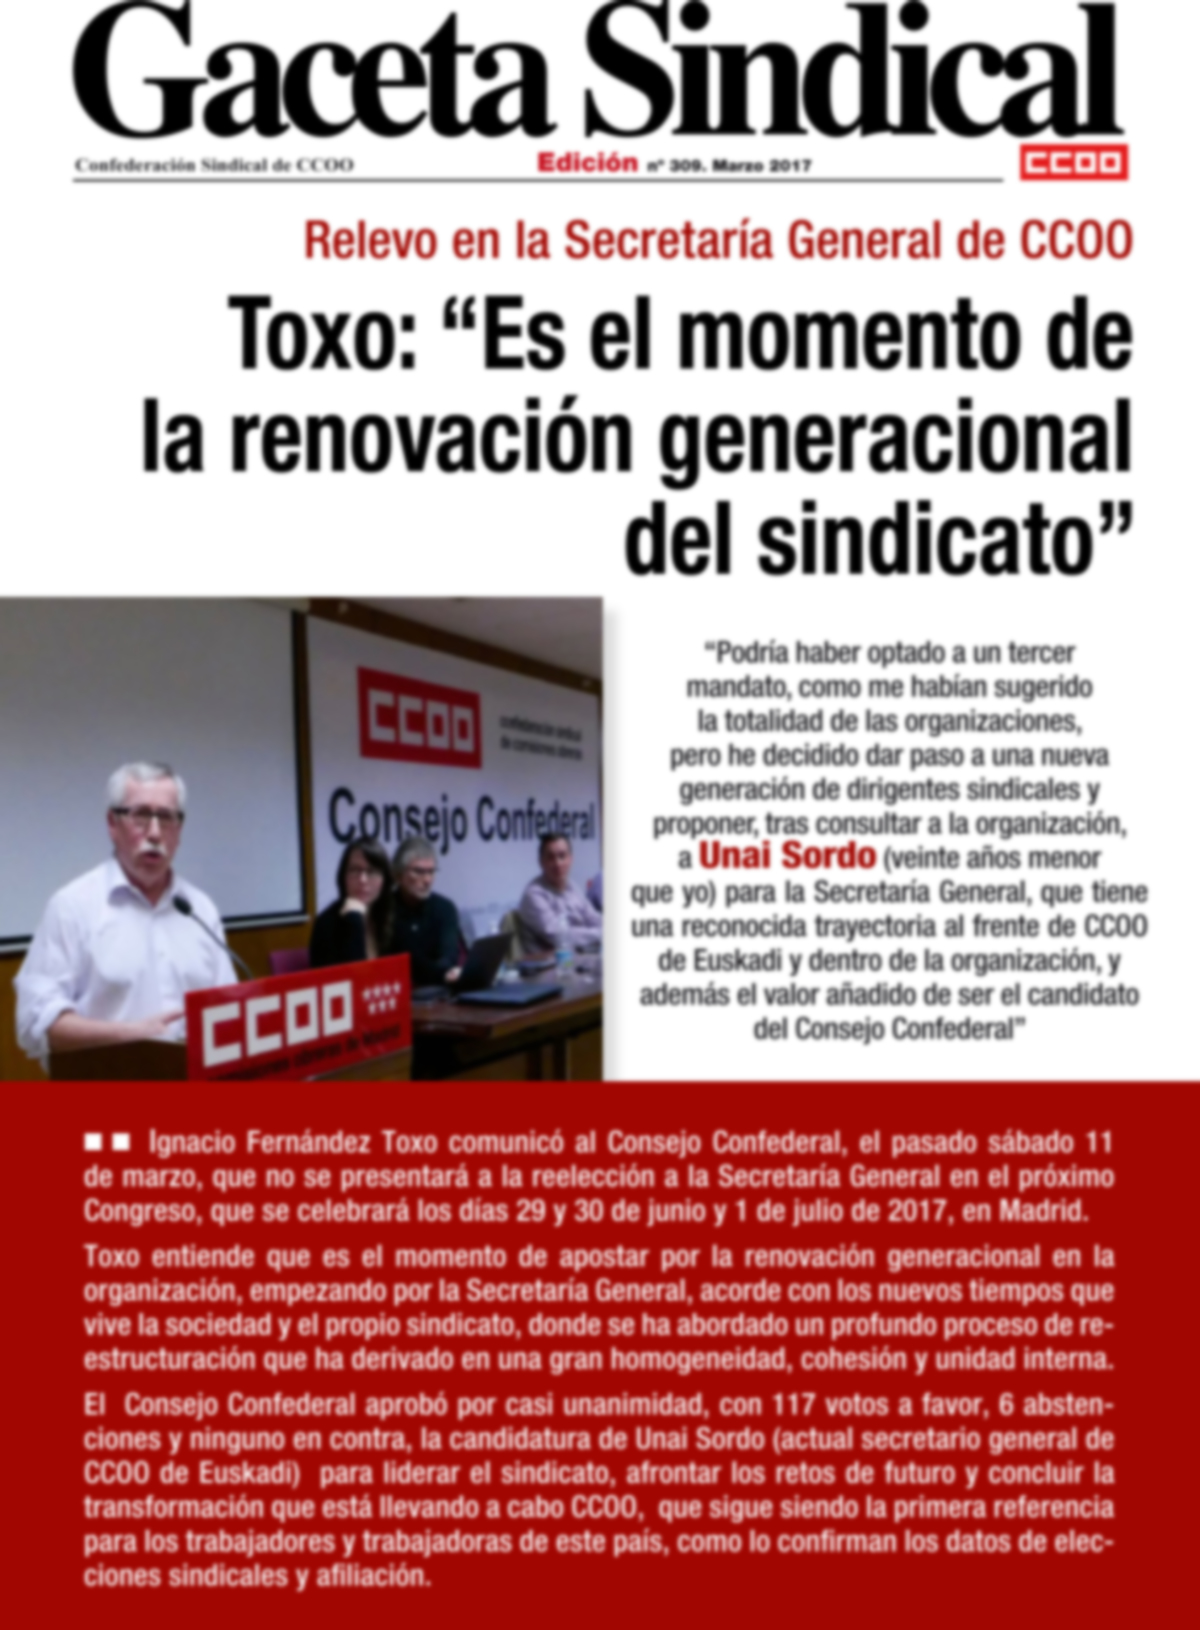 Toxo: Es el momento de la renovación generacional del sindicato"